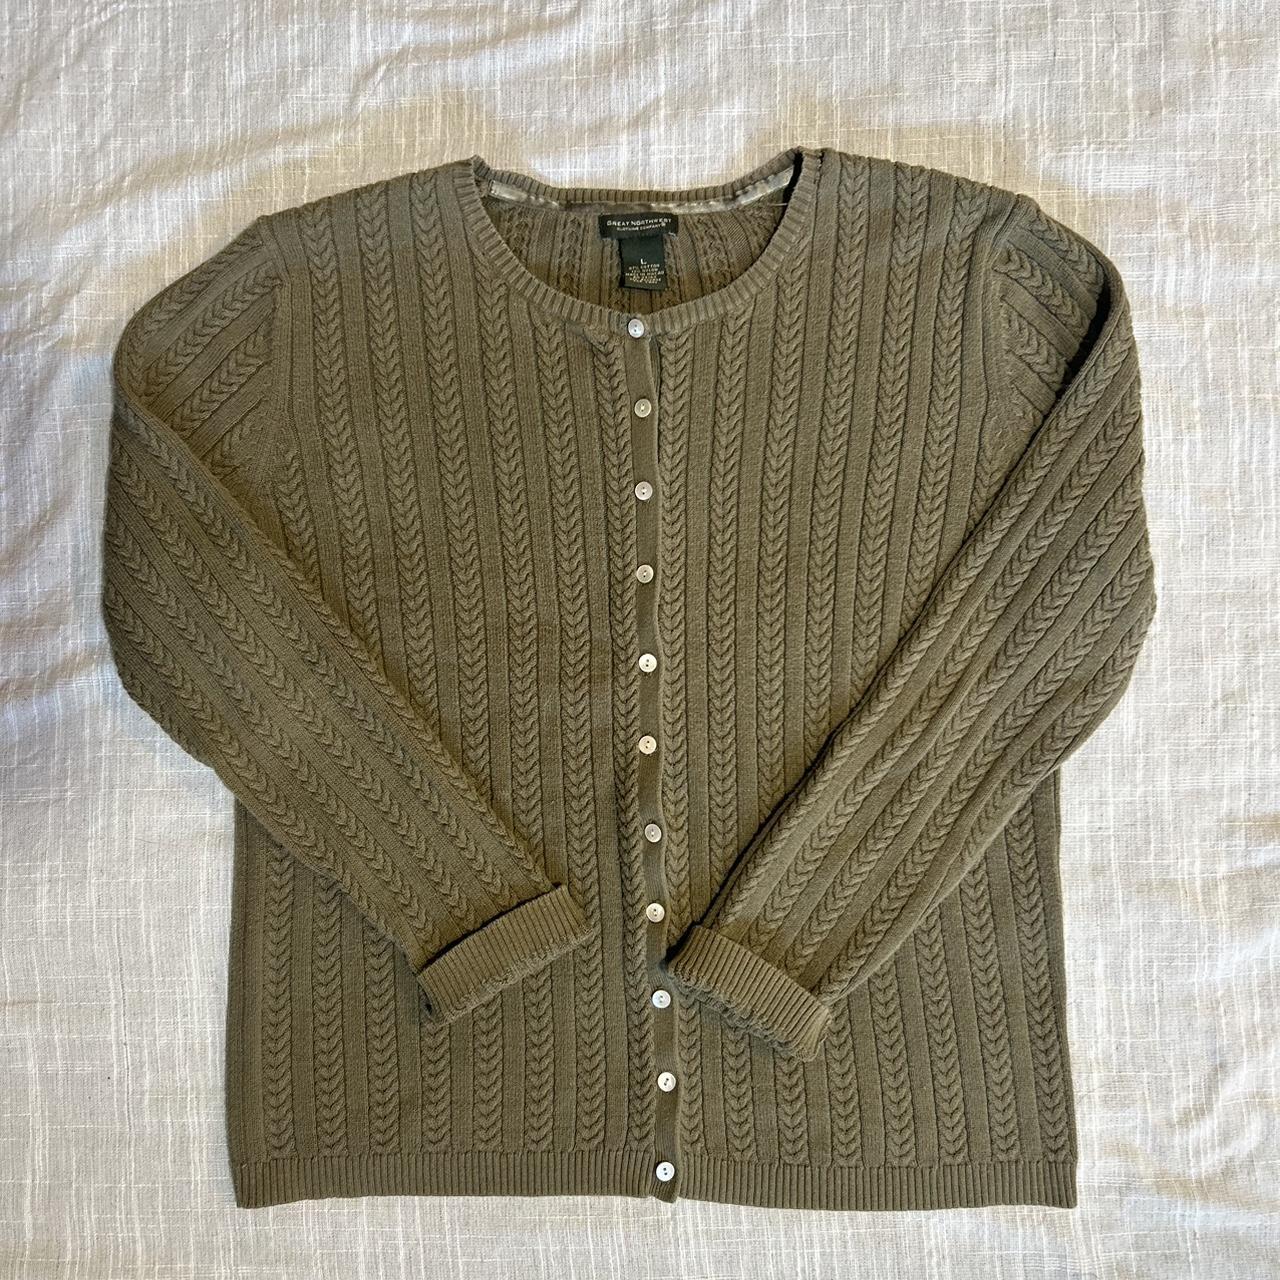 VTG Button Down Sweater Such a cute basic, light... - Depop